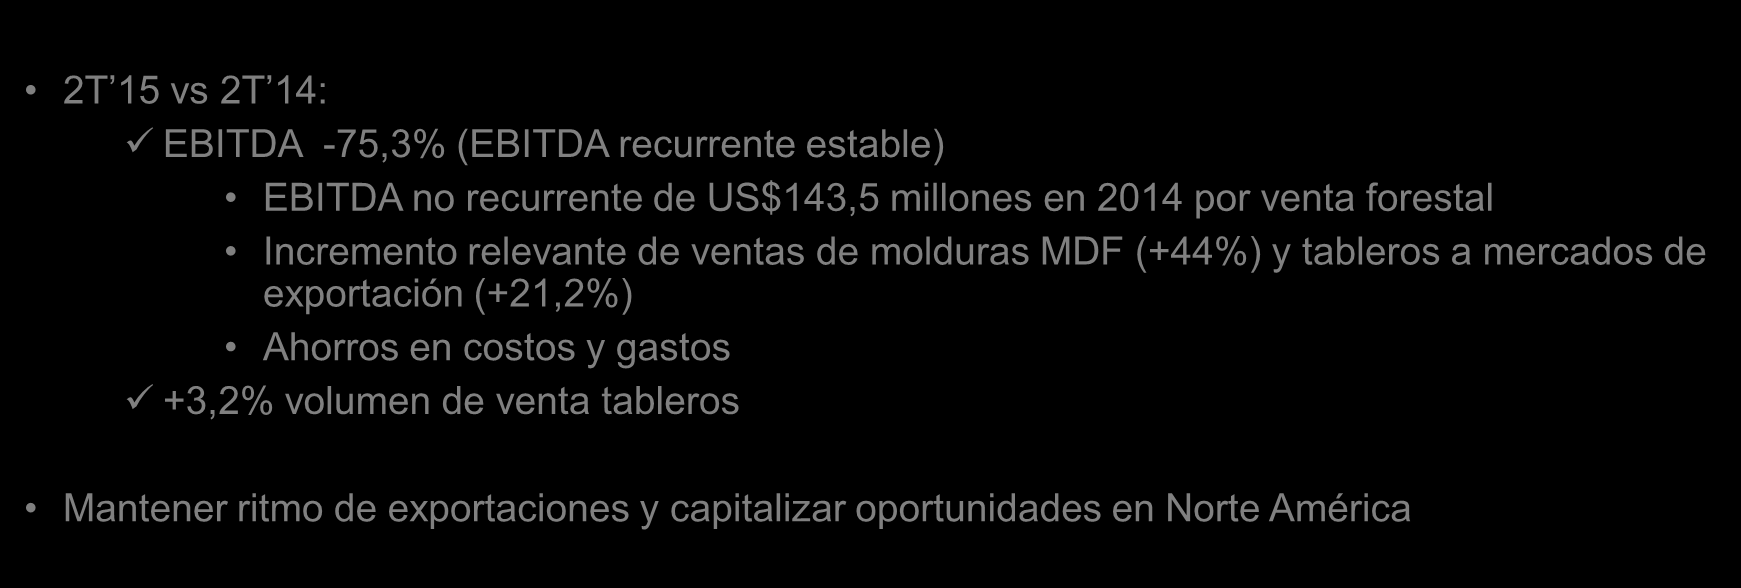 Mercados y desempeño operacional Chile + exportaciones 1 Año 2014 R 2 Año 2015 E 2 Var. PIB Chile (var. anual %) 1,9% 2,9% 1,0 pp PIB USA (var. anual %) 2,4% 3,4% 1,0 pp PIB Perú (var.